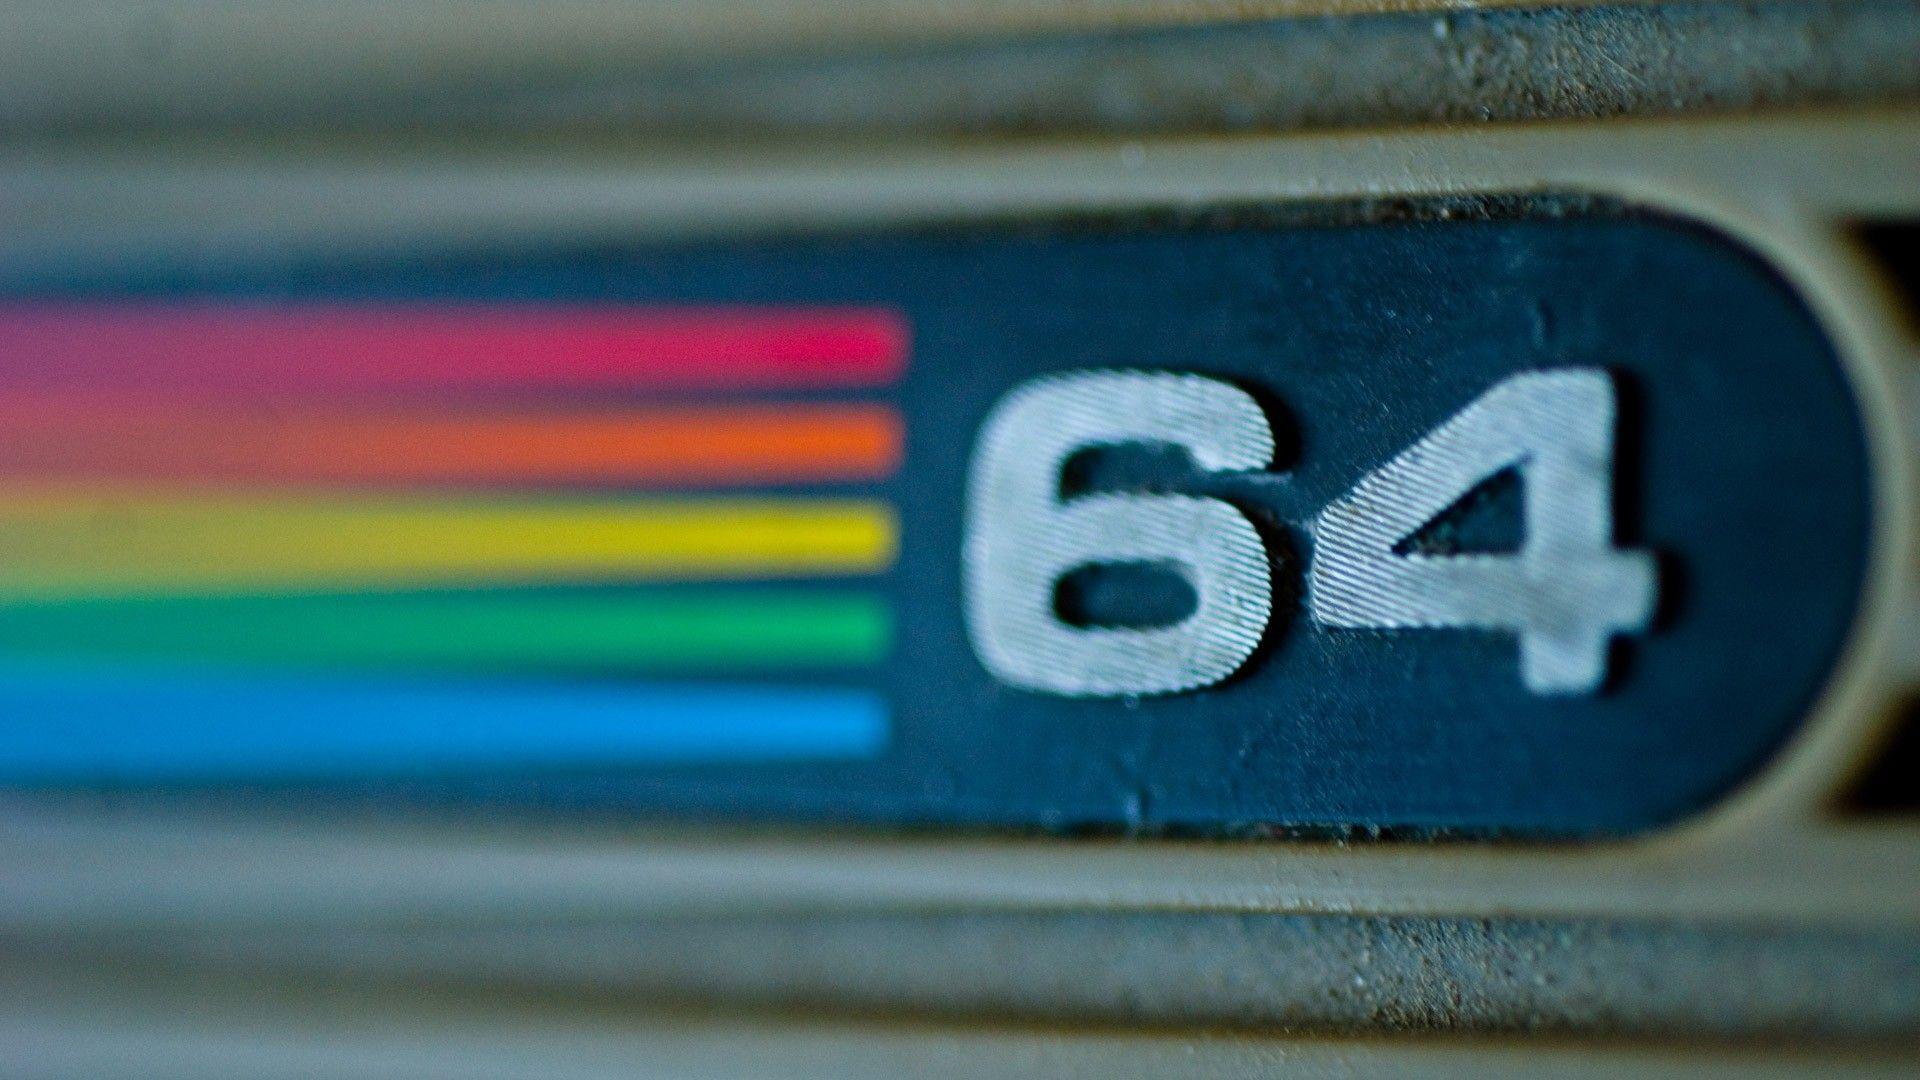 Simply: C64 Commodore Commodore 64 computers